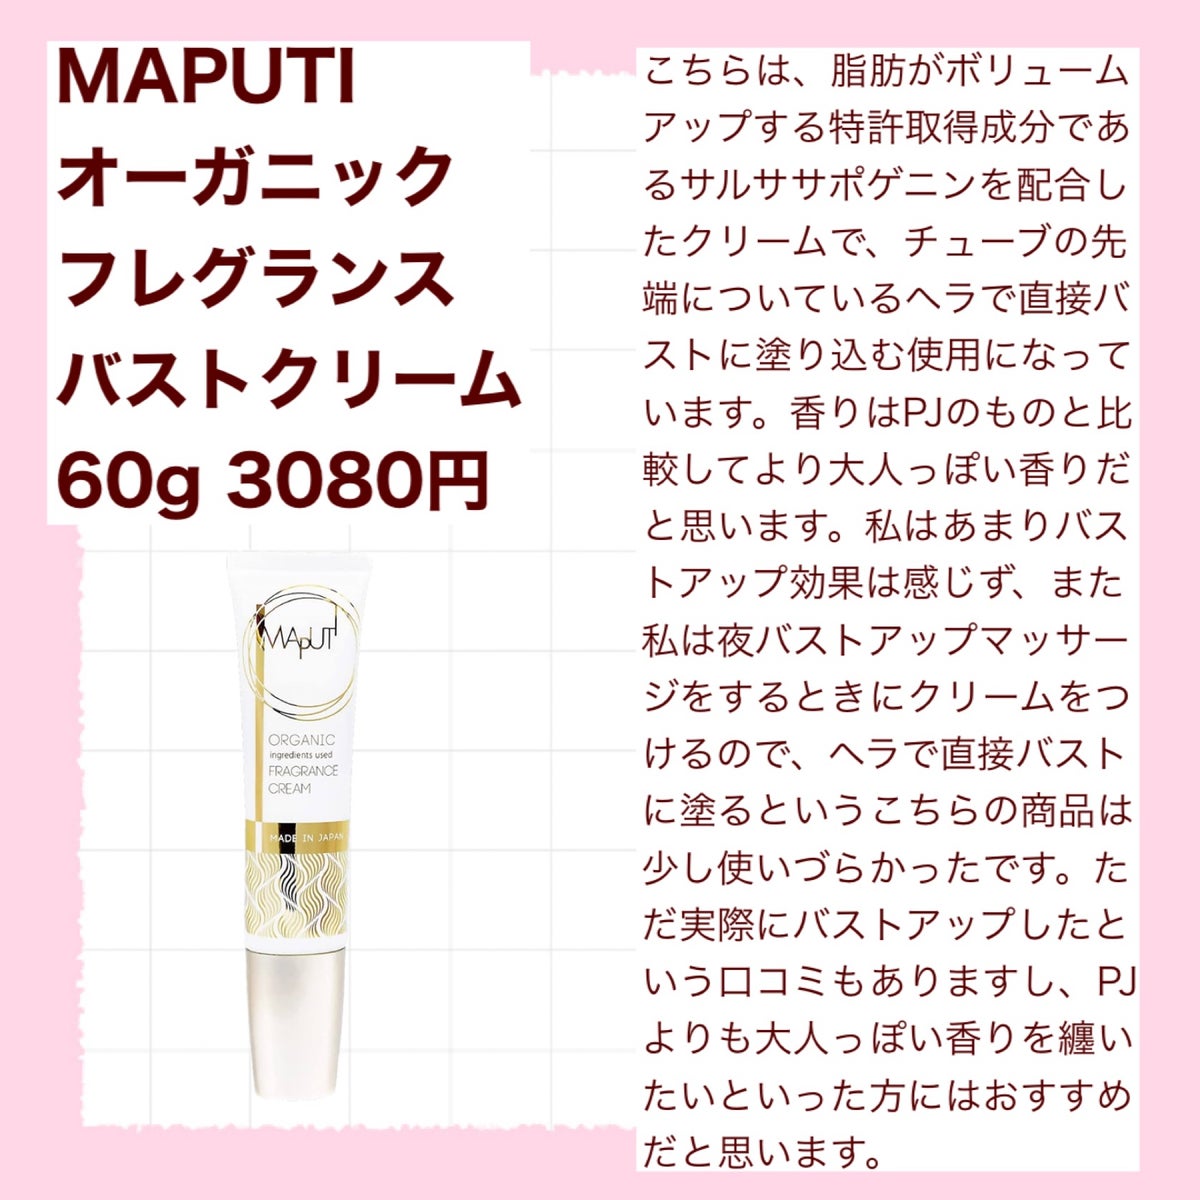 MAPUTI(マプティ) オーガニック フレグランス バストクリーム 3本